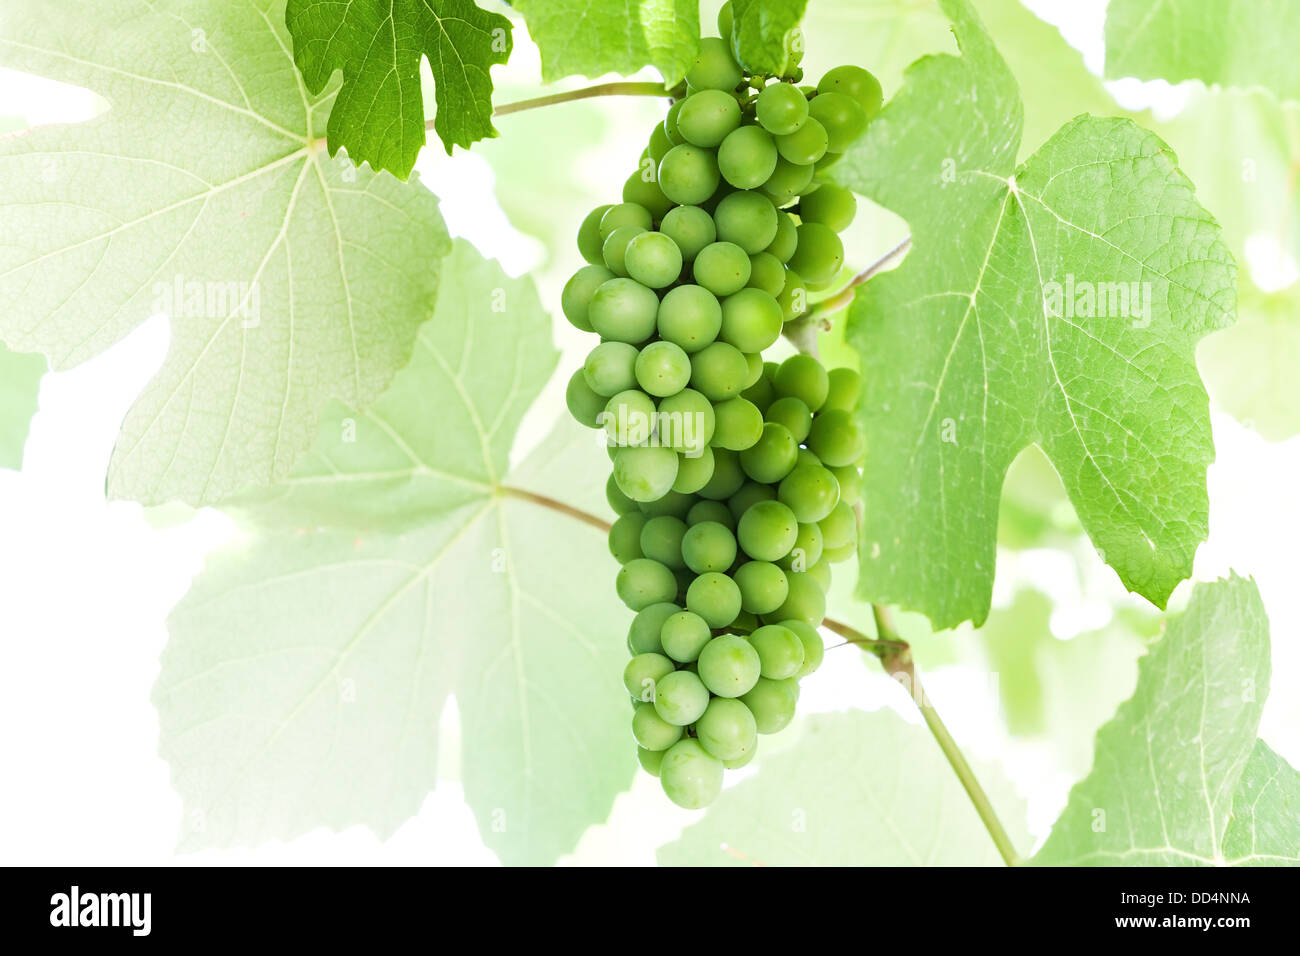 Las uvas verdes colgando de una ramas sobre fondo blanco. Foto de stock